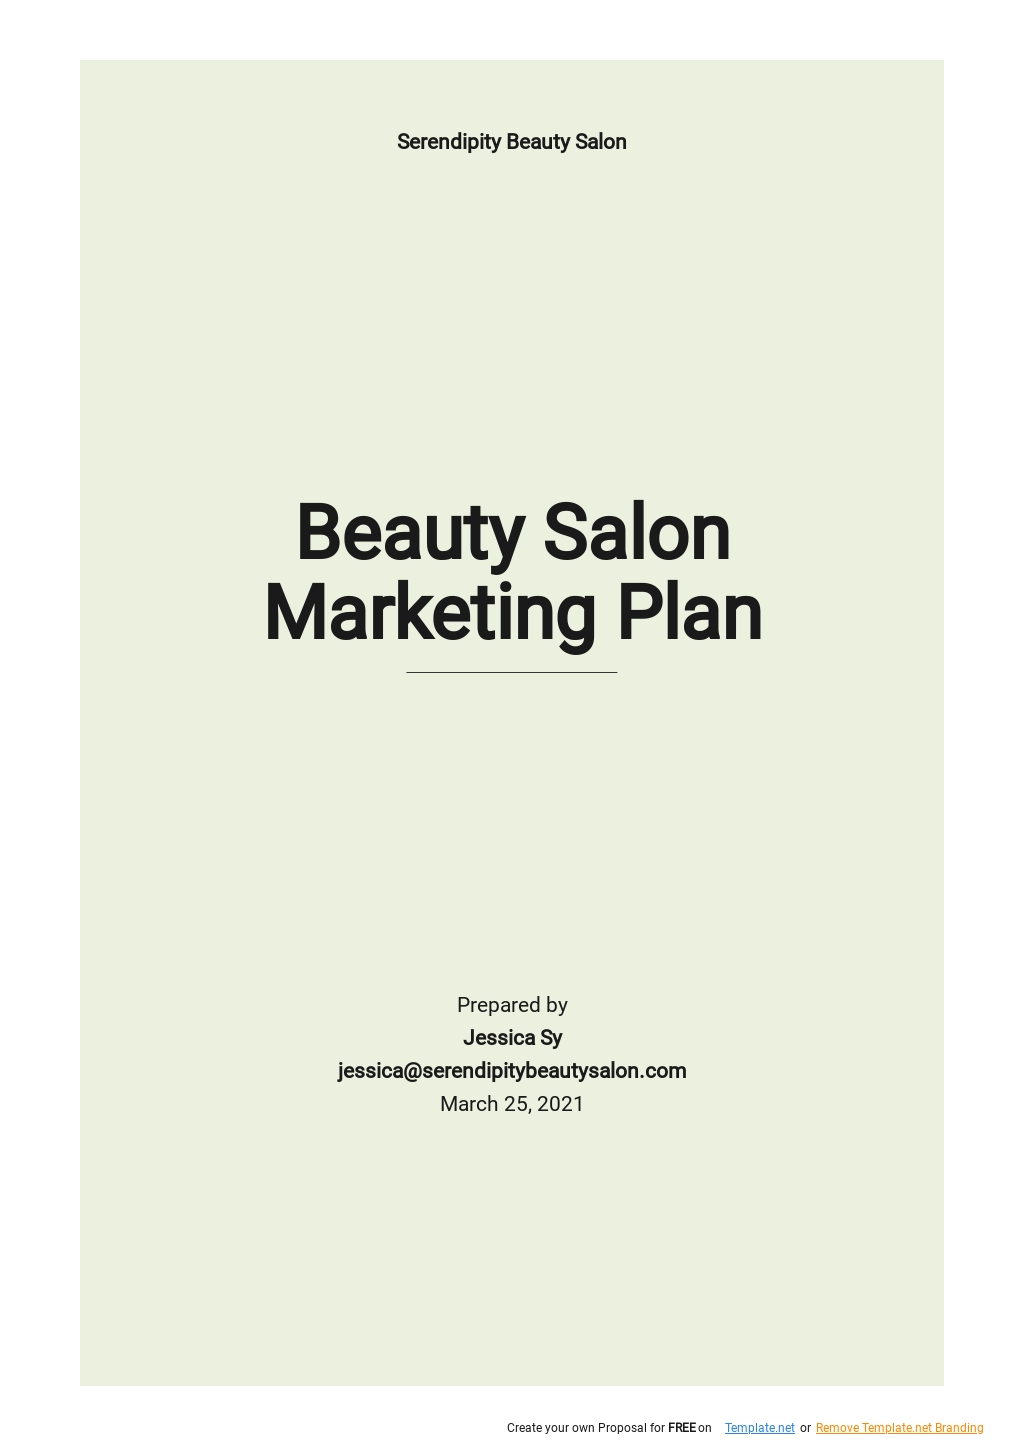 hair salon business plan pdf download free